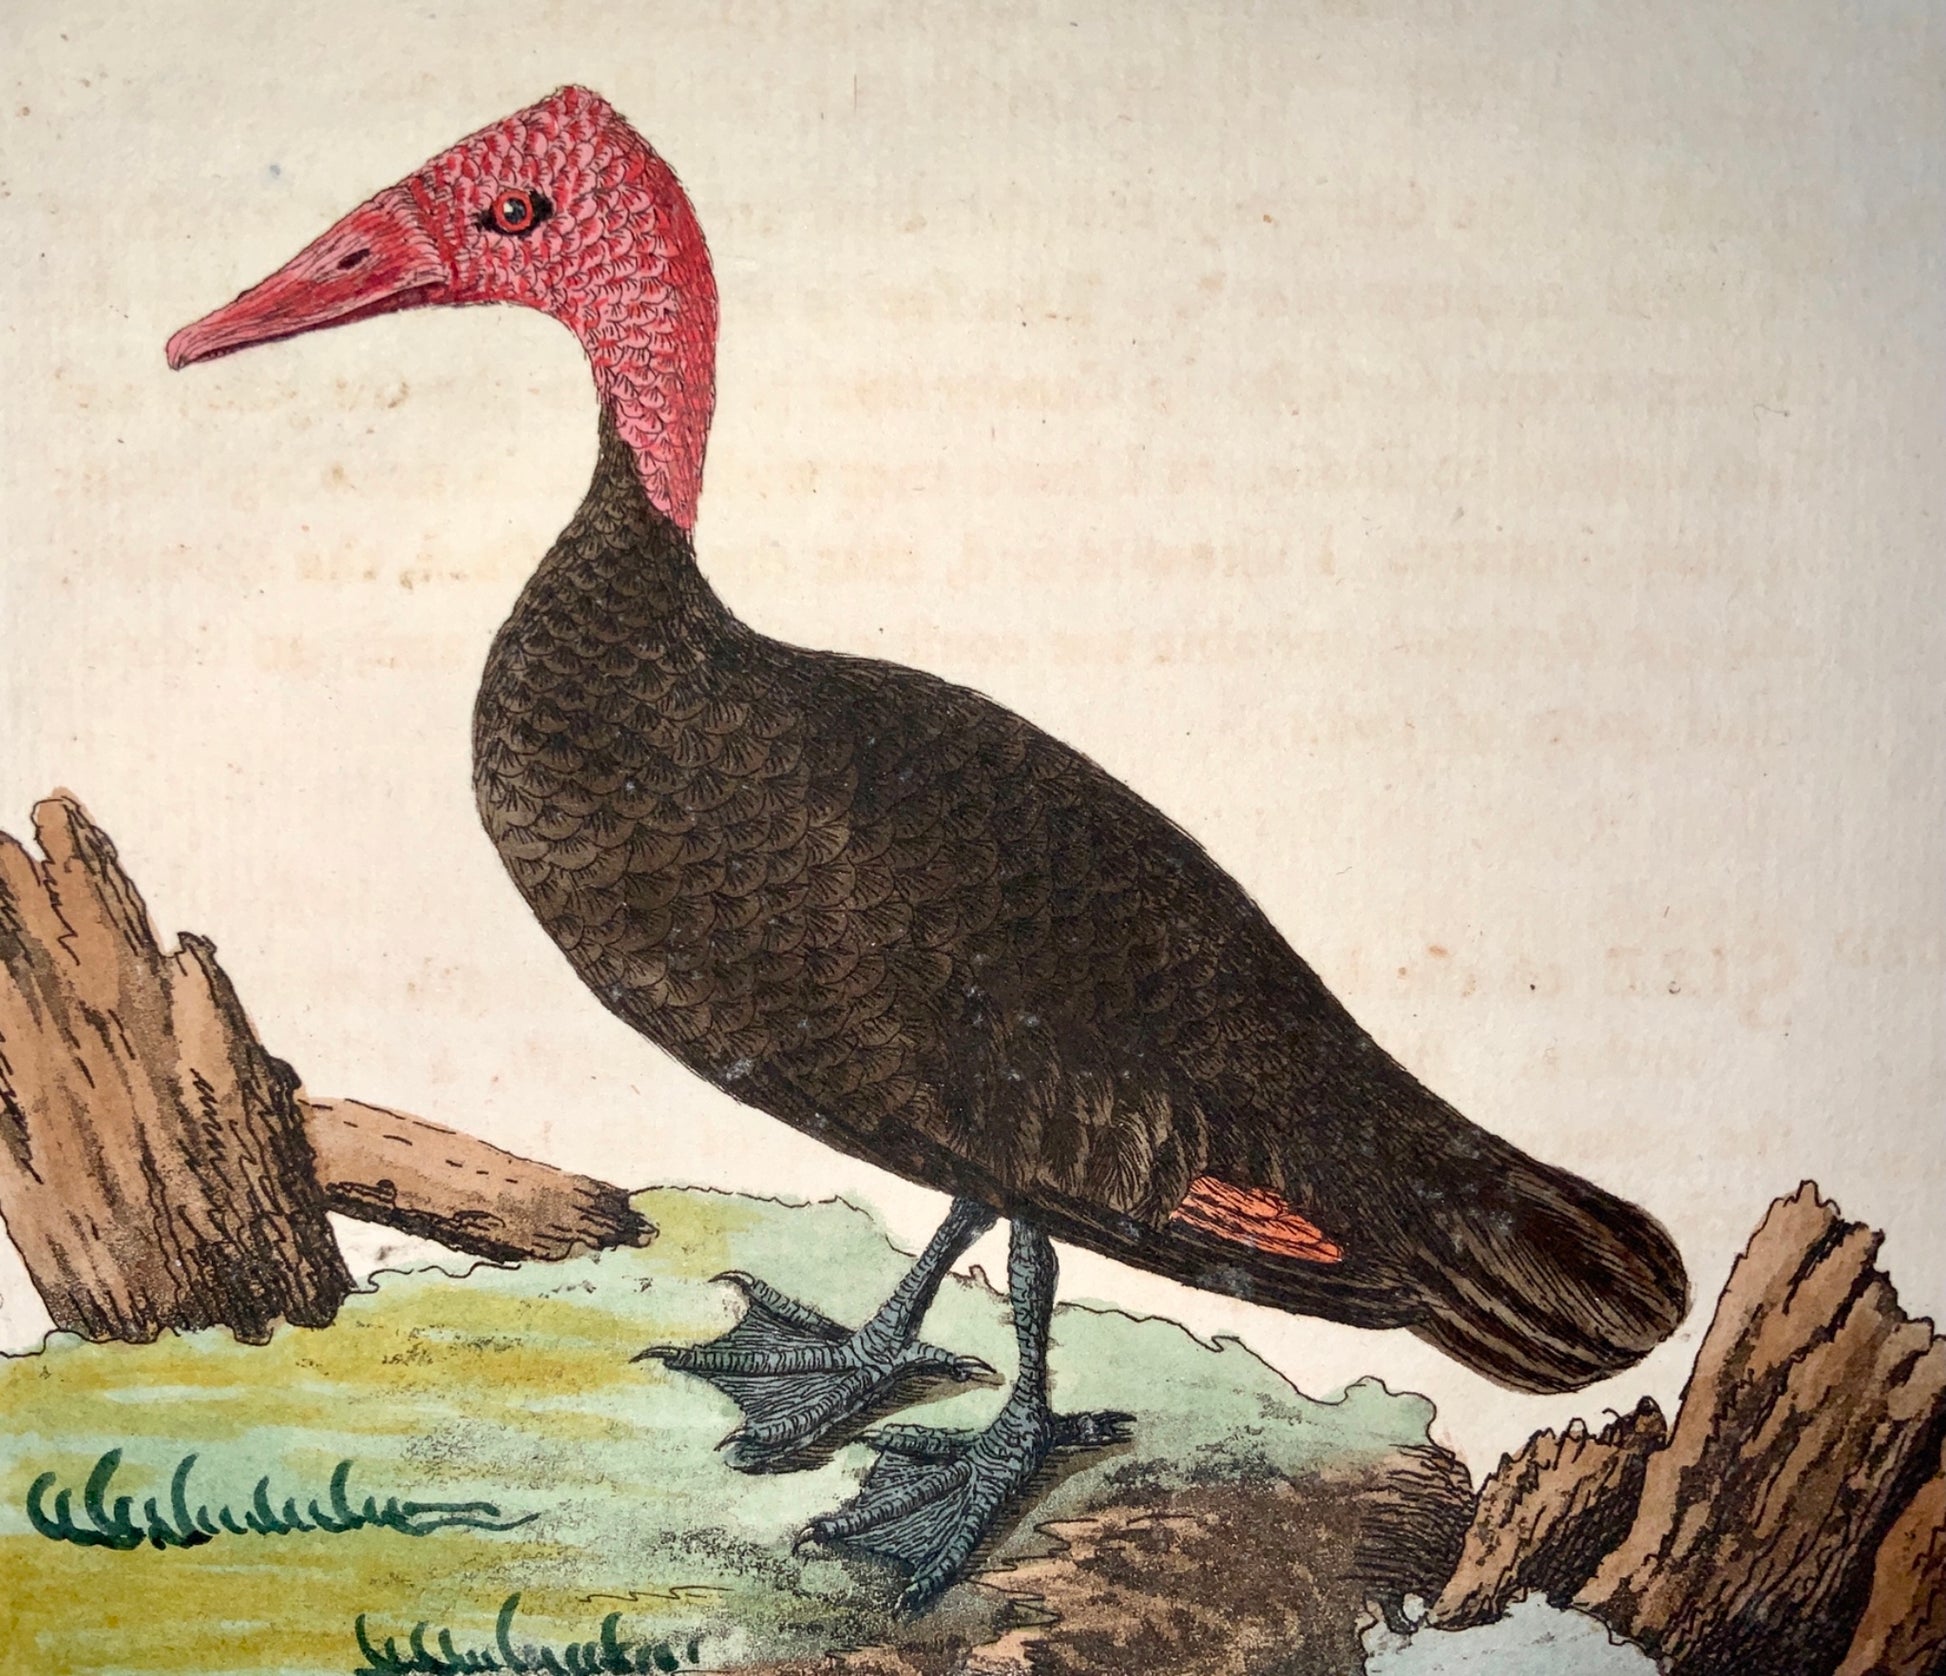 1785 John Latham - Synopsis - PINK HEADED DUCK Extinct - Ornithology - hand coloured